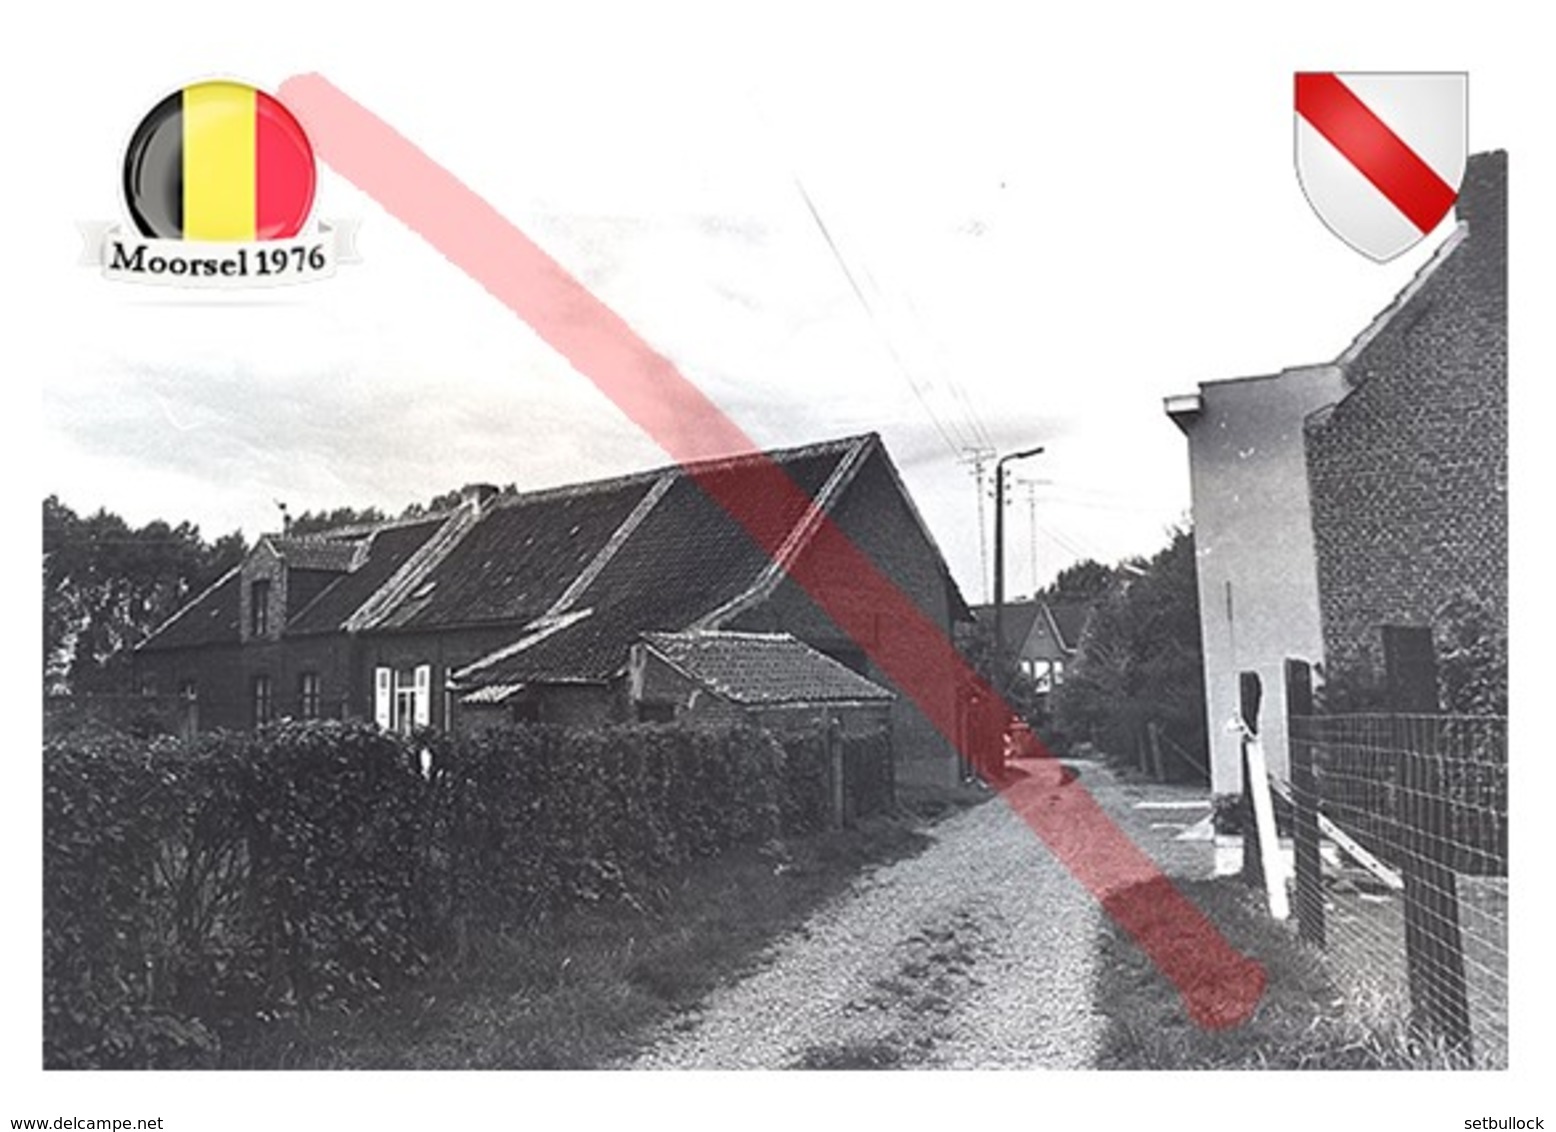 Moorsel, Aalst | Belgium | Commune | Postcard Modern Ukraine - Landkarten